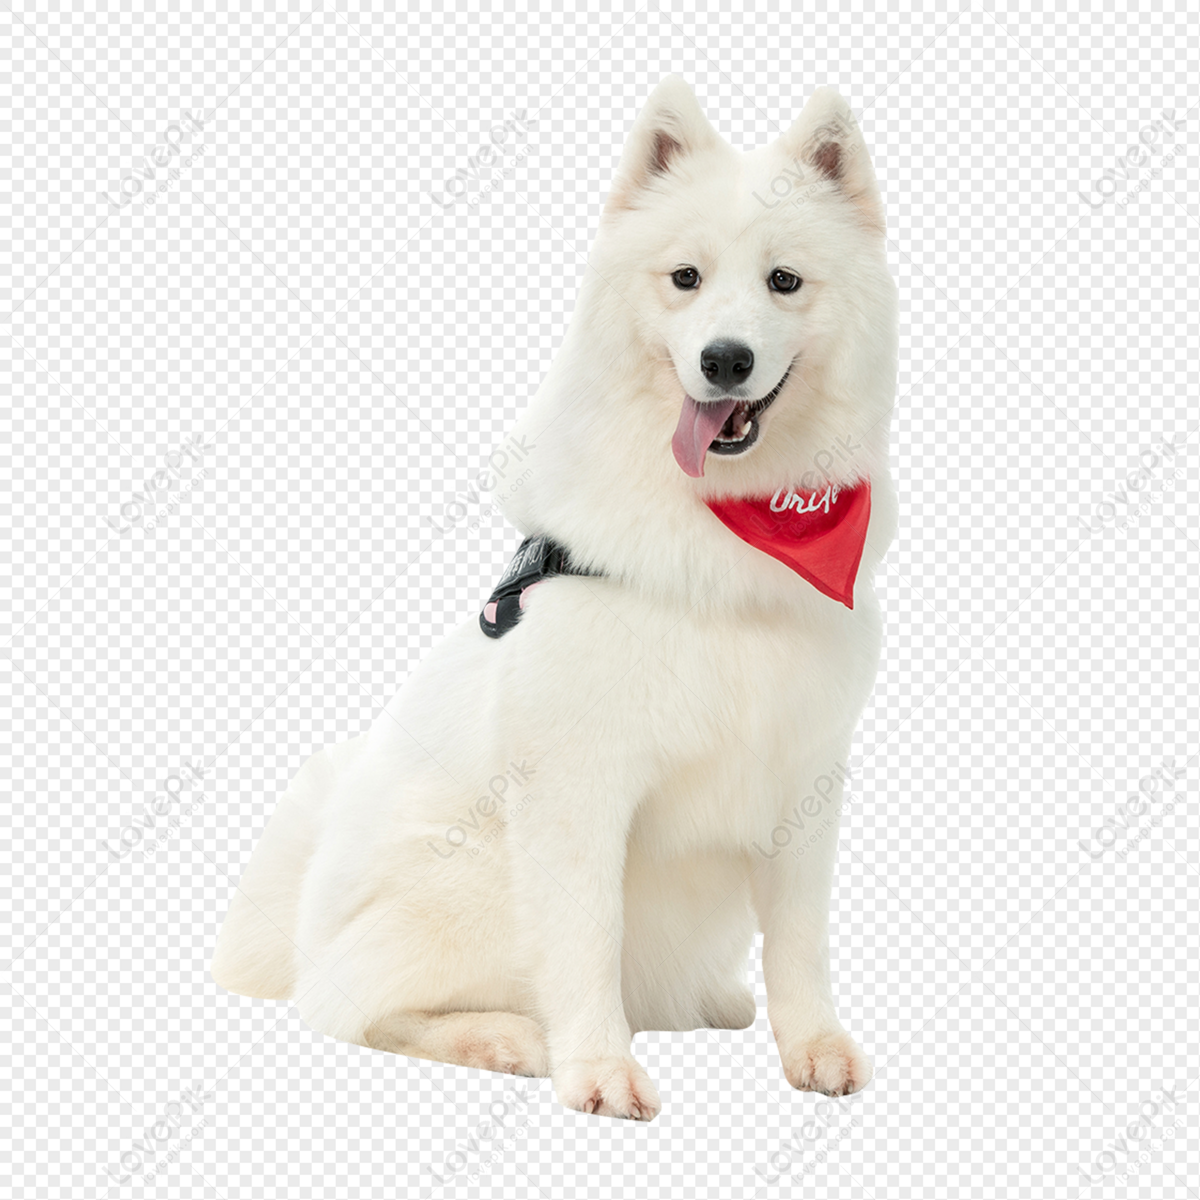 Chó Samoyed là một giống chó rất đáng yêu và đáng yêu, với bộ lông trắng bông và bản tính vui tươi. Hãy xem hình ảnh của những chú chó Samoyed này để cảm nhận được sự thoải mái và mềm mại của chúng.